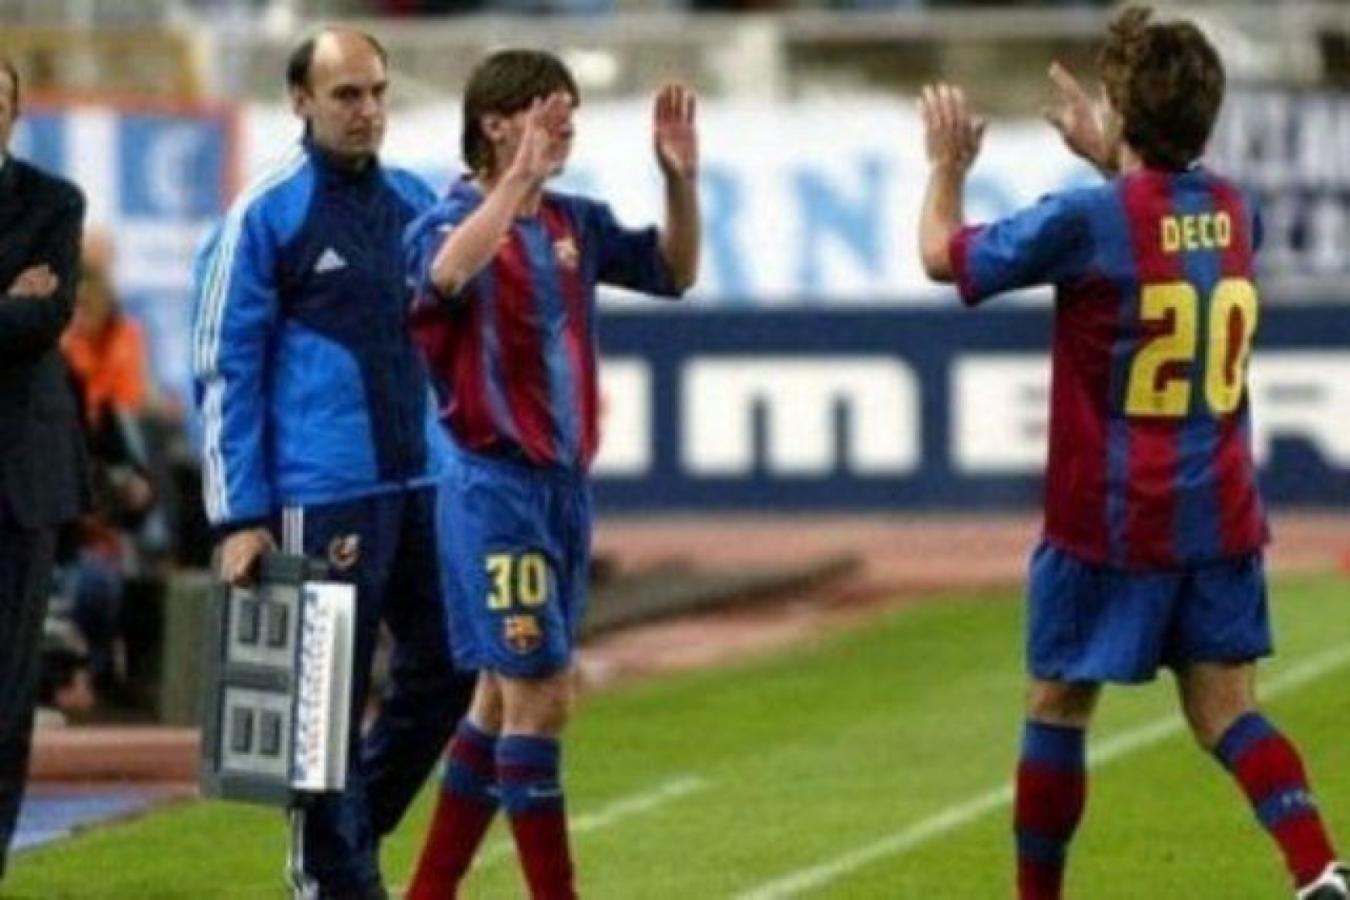 Imagen 2004: El primer partido de Messi en Barcelona fue contra Espanyol, que tenía a Pochettino como jugador